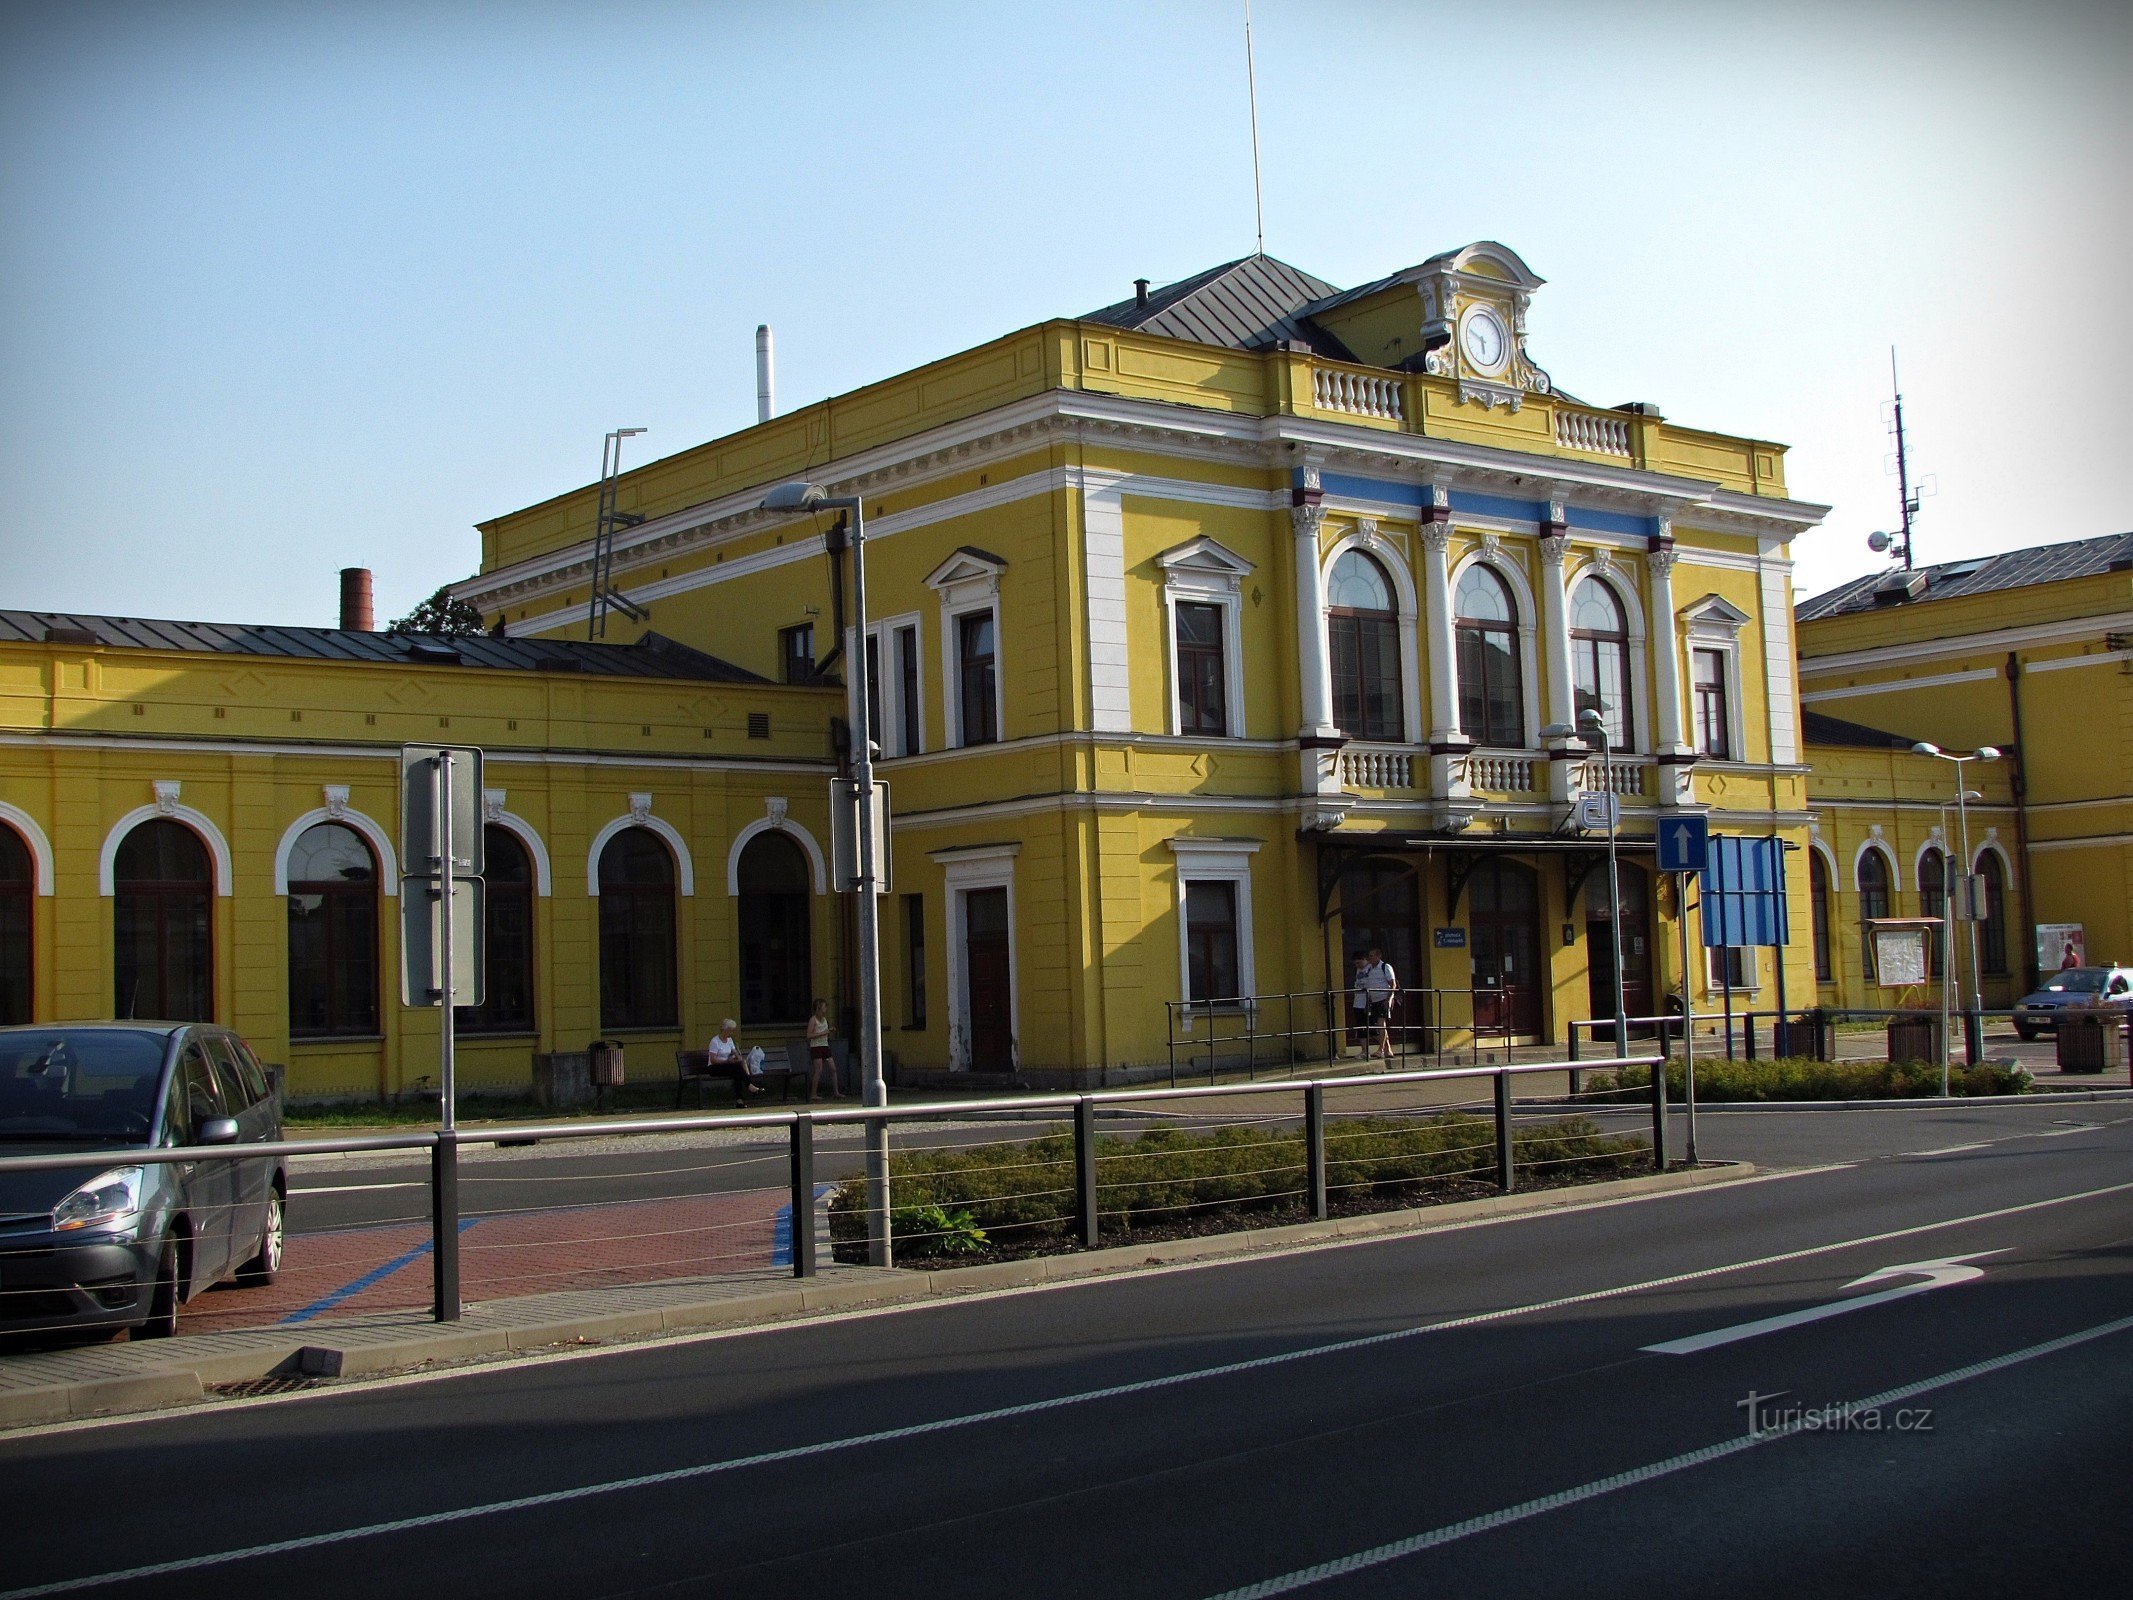 Šumperk - hovedbygningen på togstationen